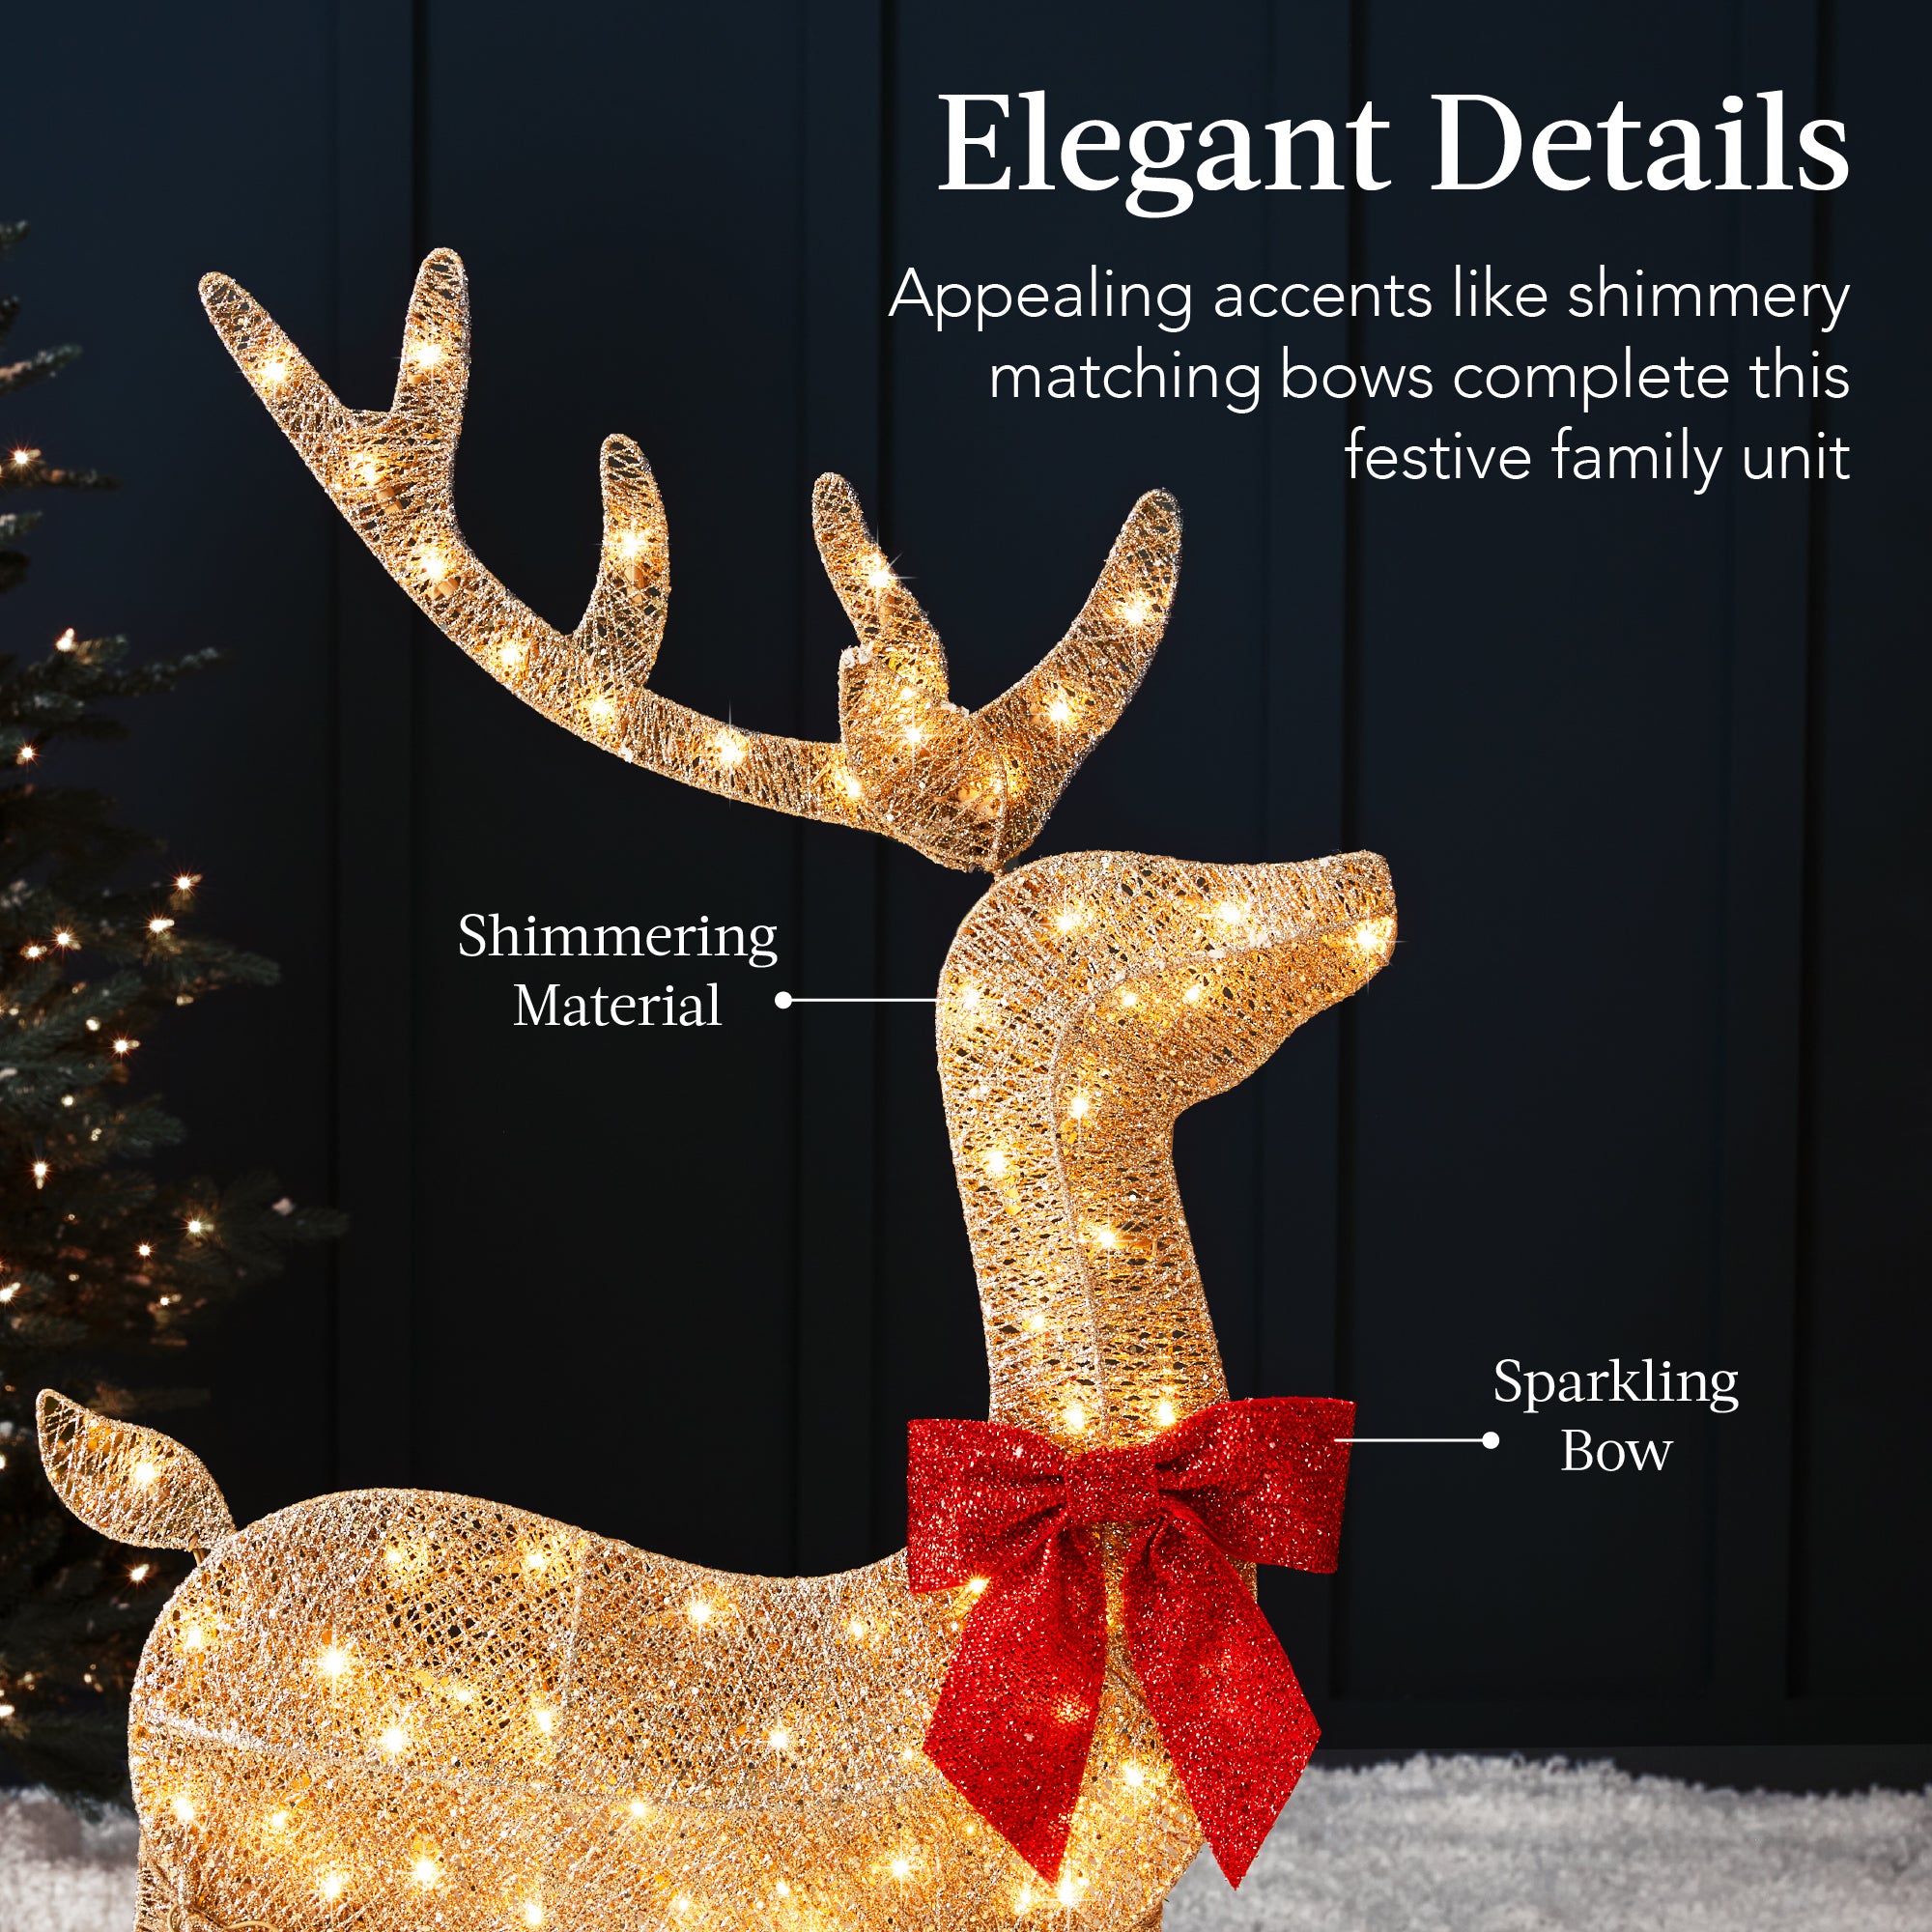 Christmas figure reindeer deer LED 3D with 180 leds warm light 183cm 6W  IP44 low voltage 31V